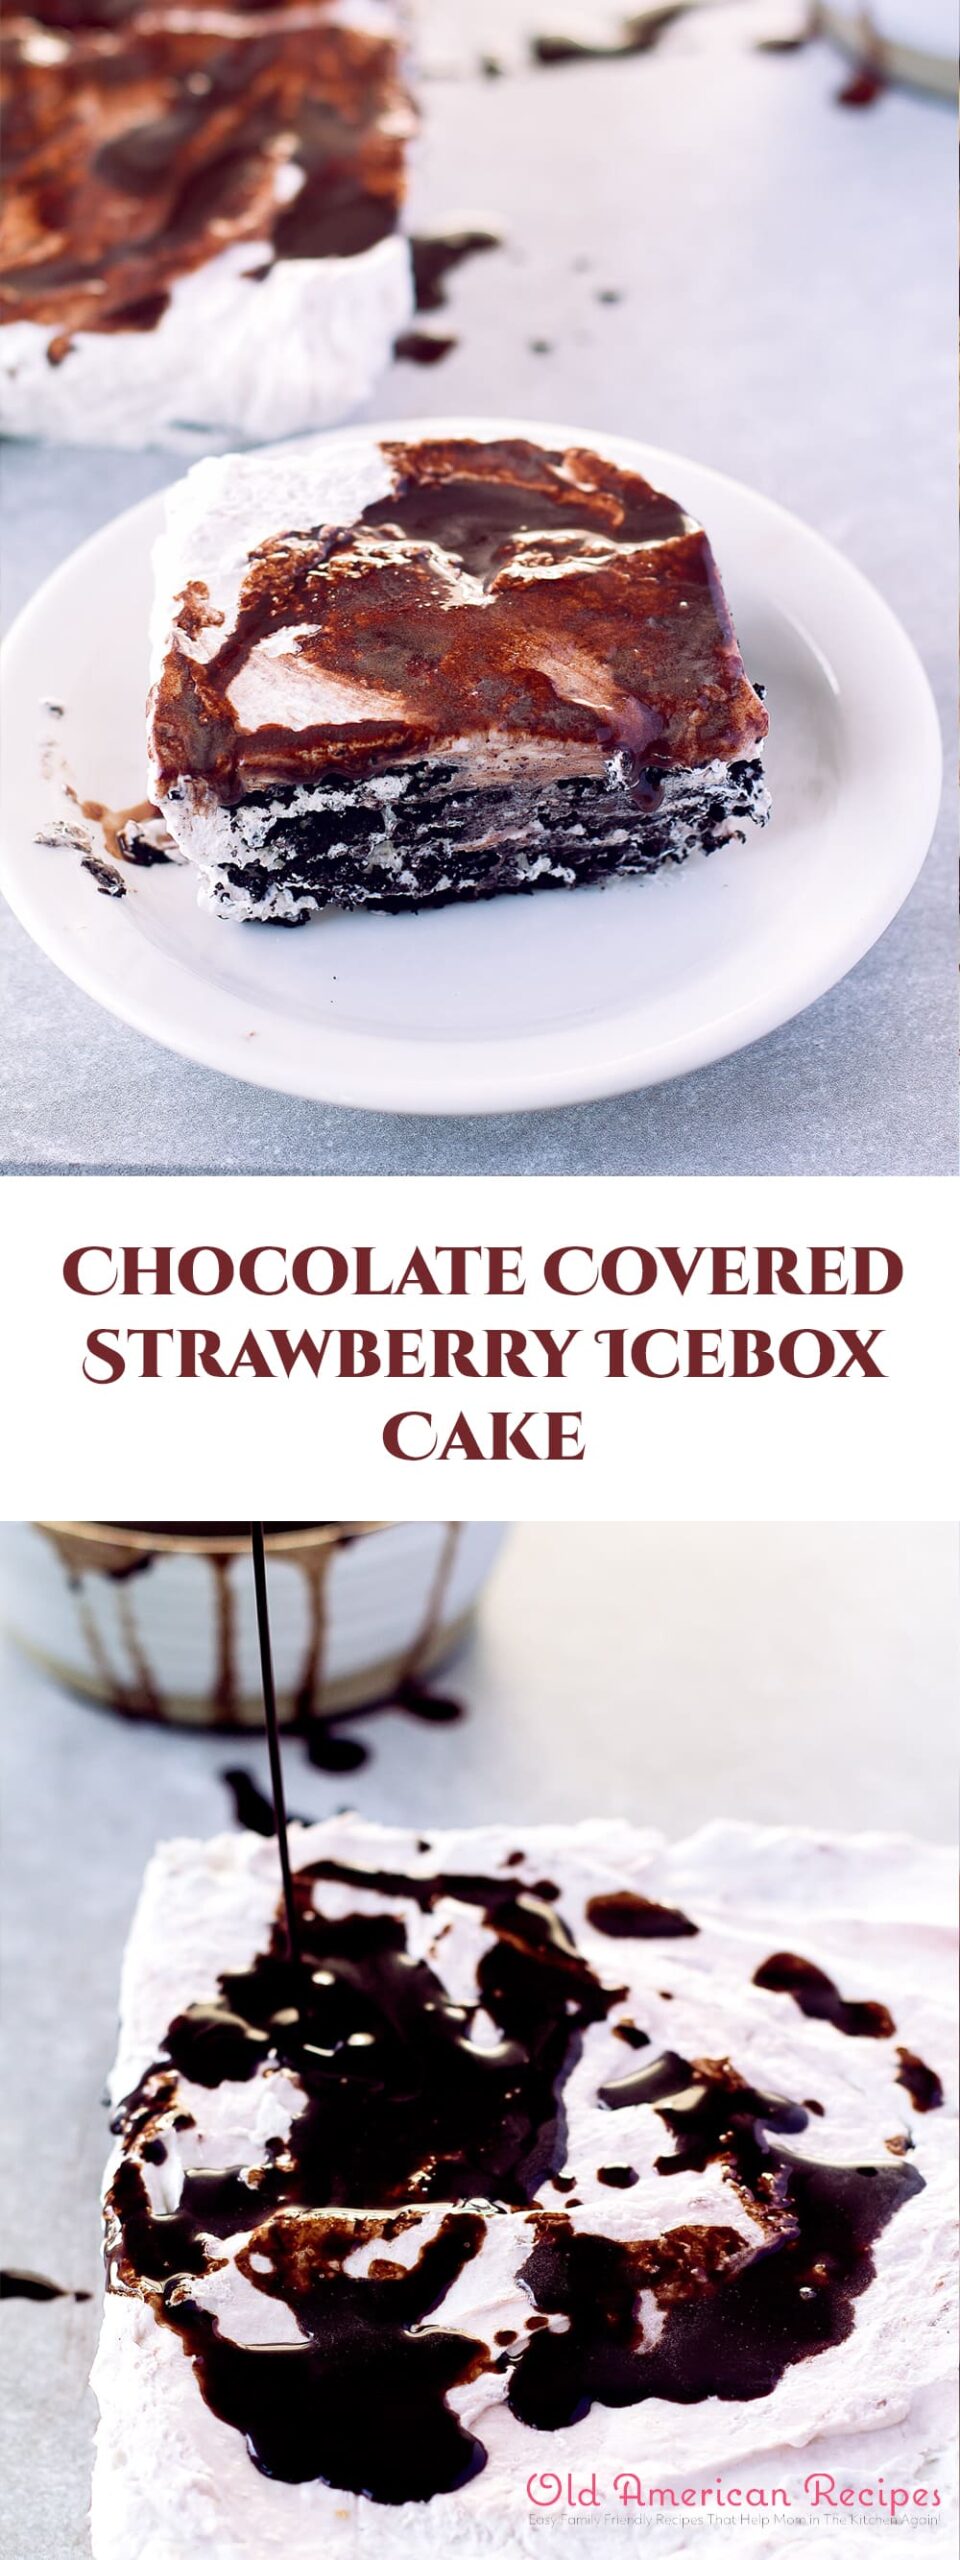 Chocolate covered strawberry icebox cake